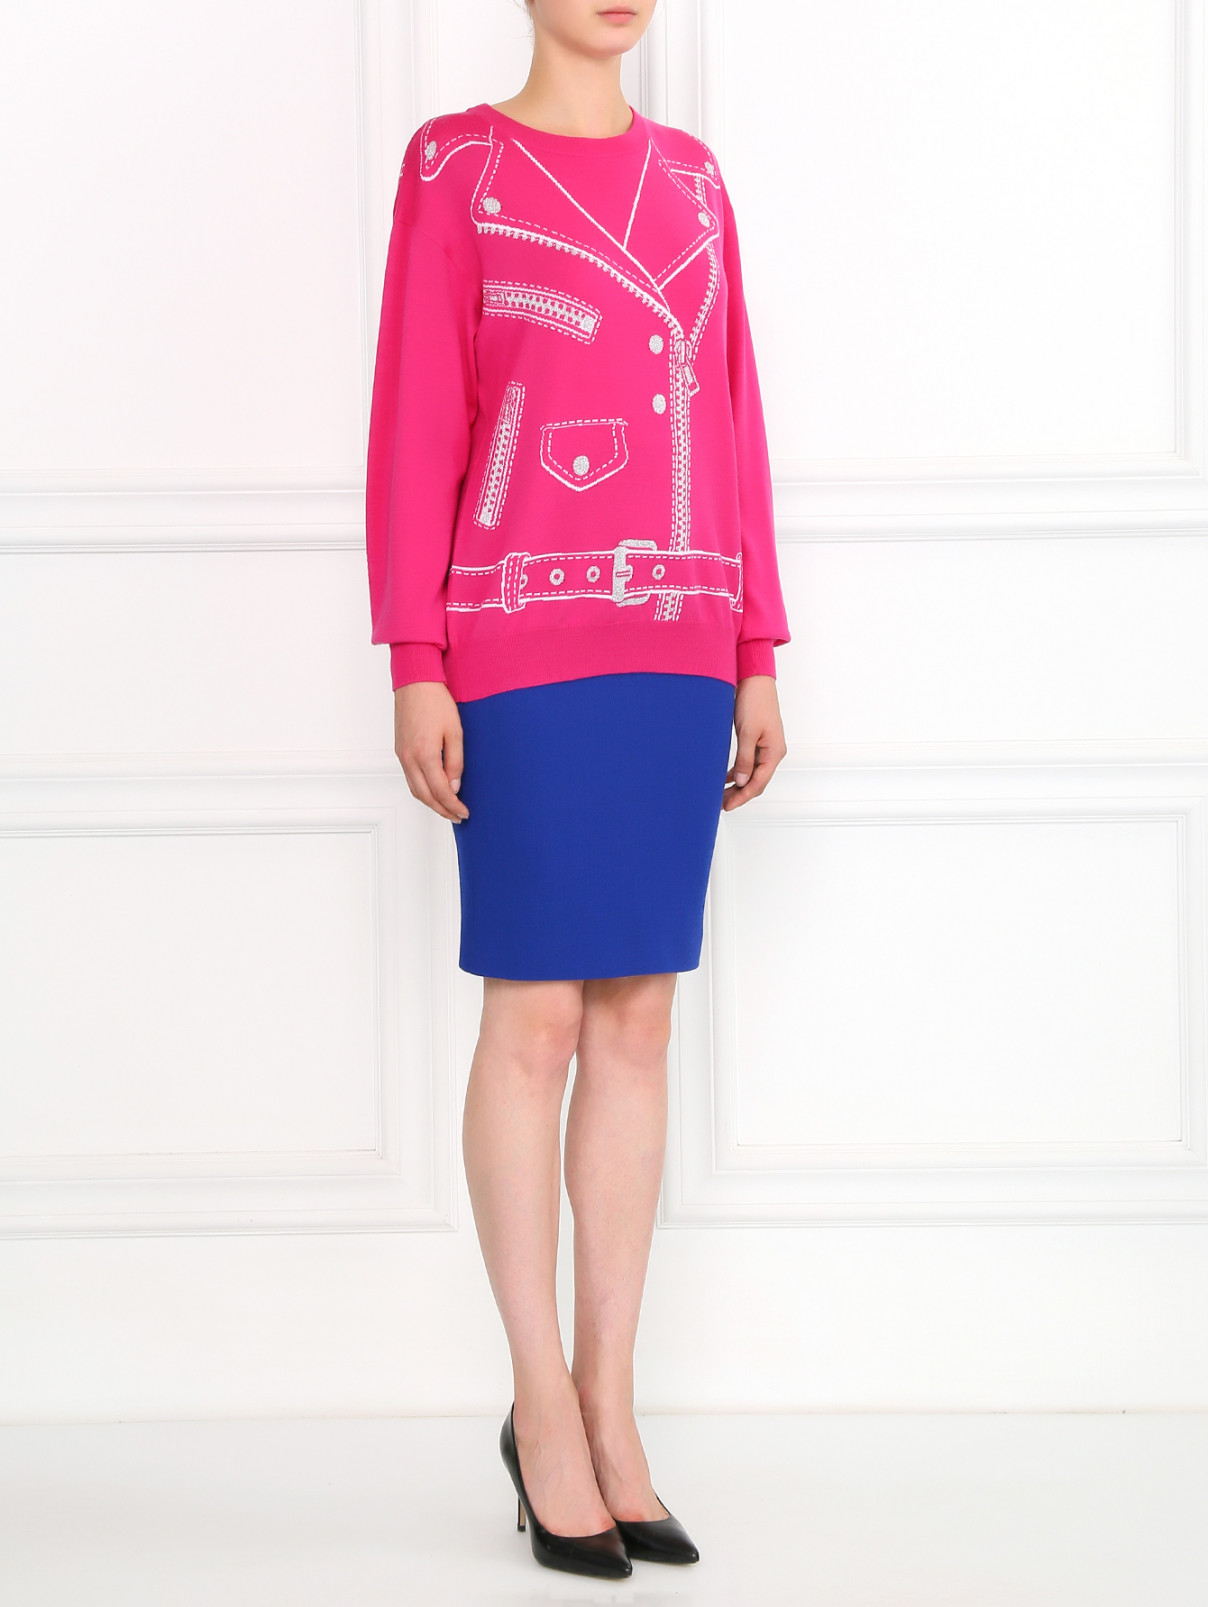 Джемпер из шерсти с узором Moschino Couture  –  Модель Общий вид  – Цвет:  Розовый